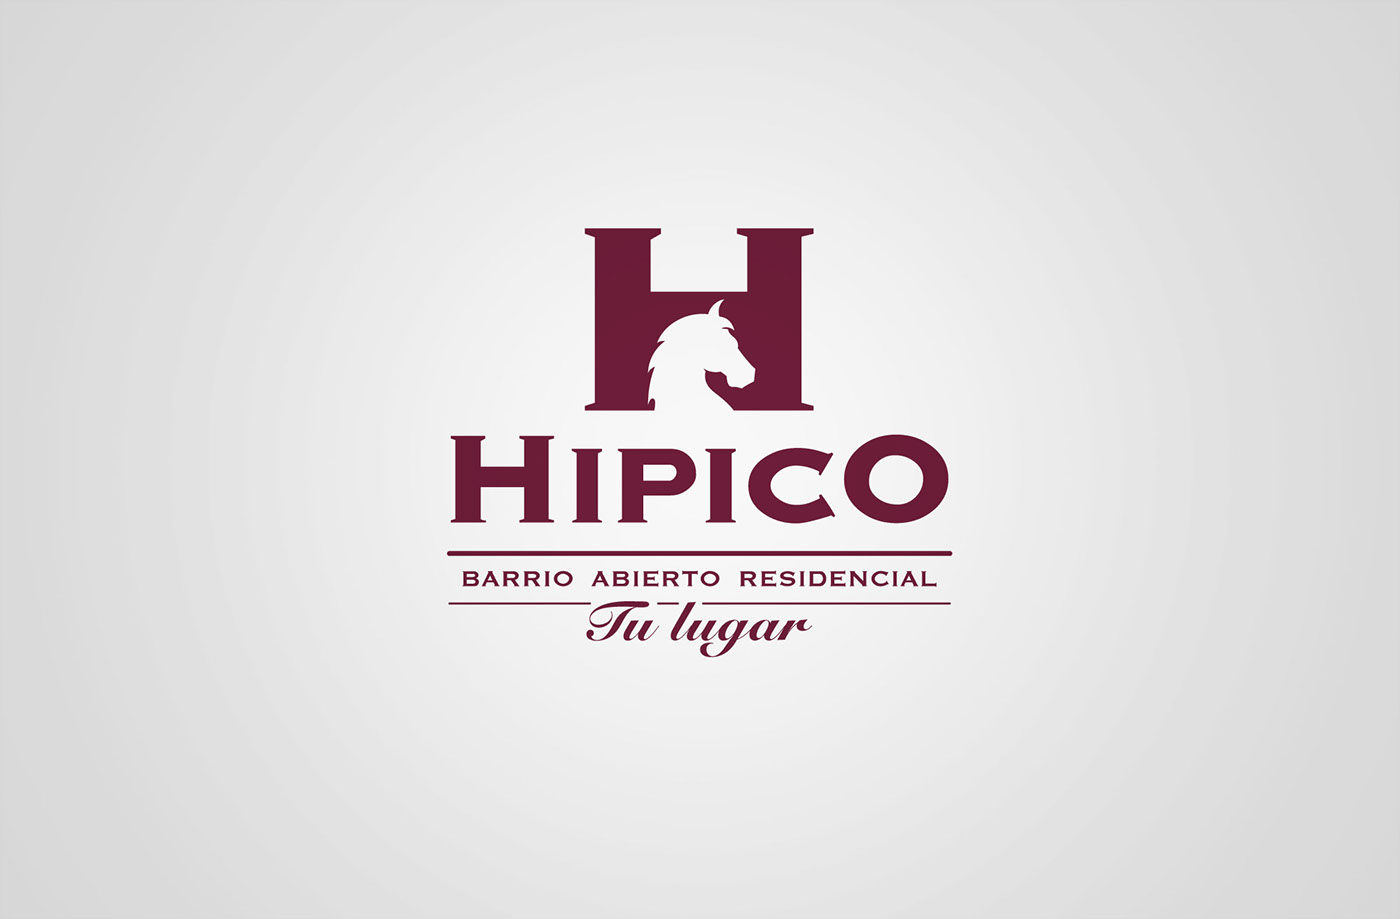 barrio neighborhood hípico club Residencial residential horse caballo